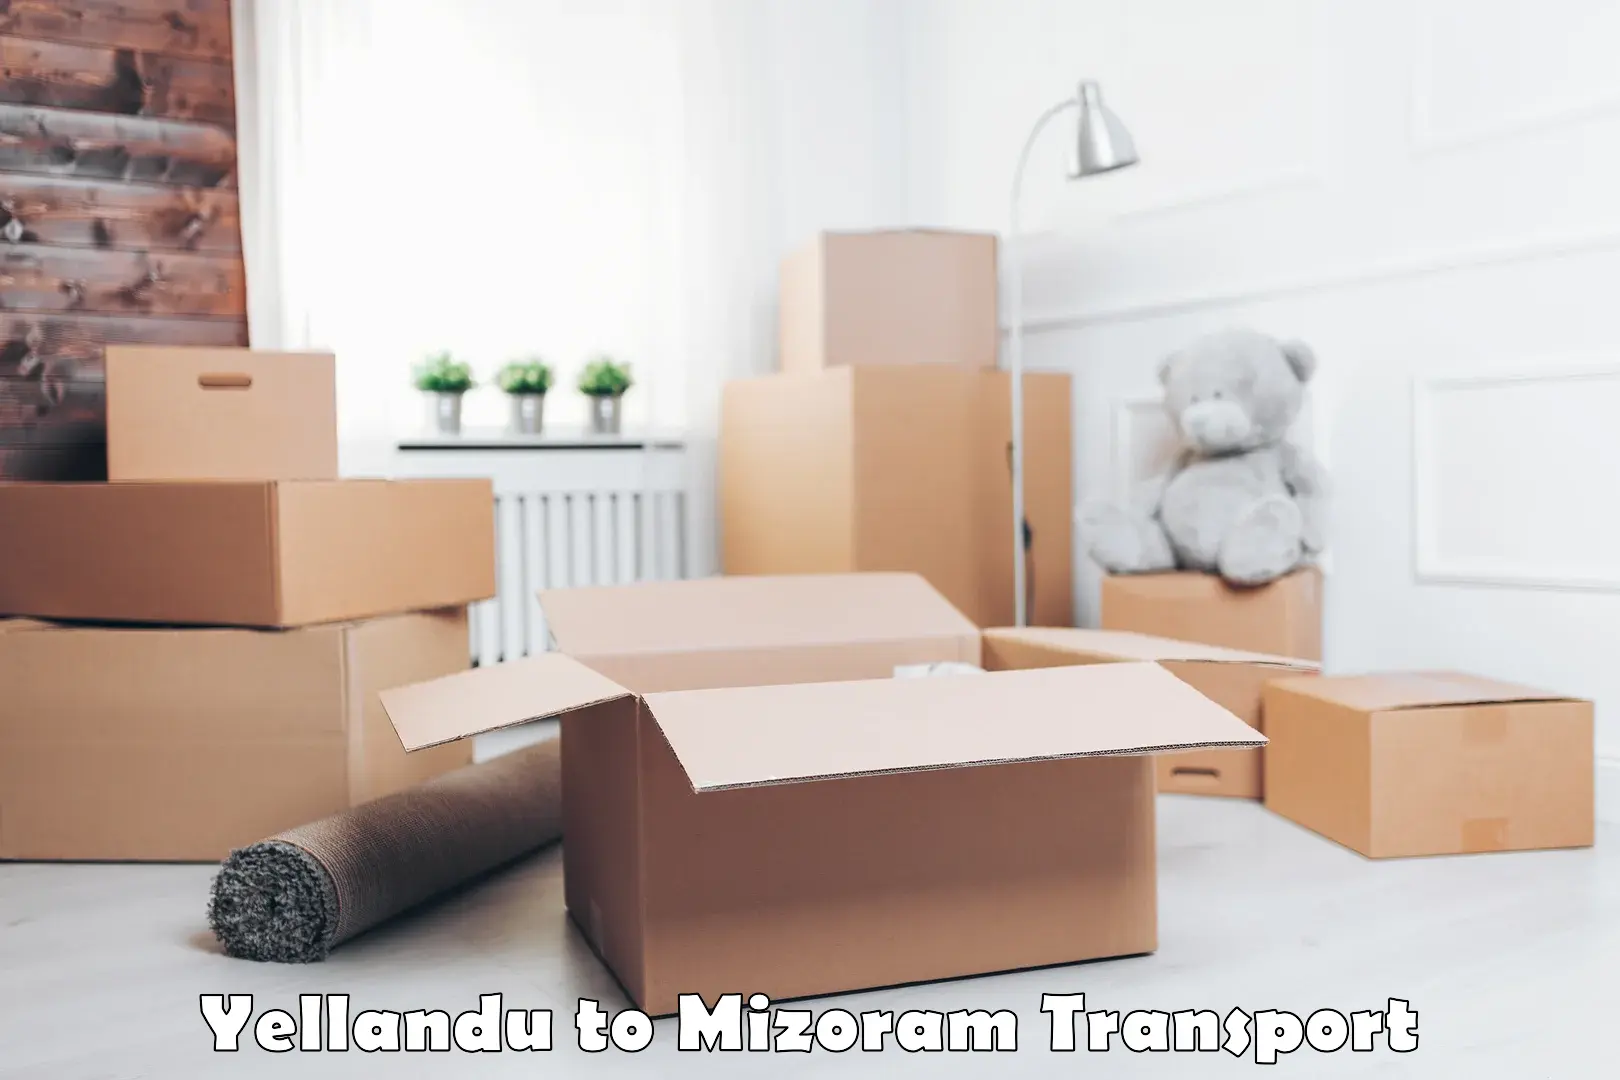 Transport in sharing Yellandu to Mizoram